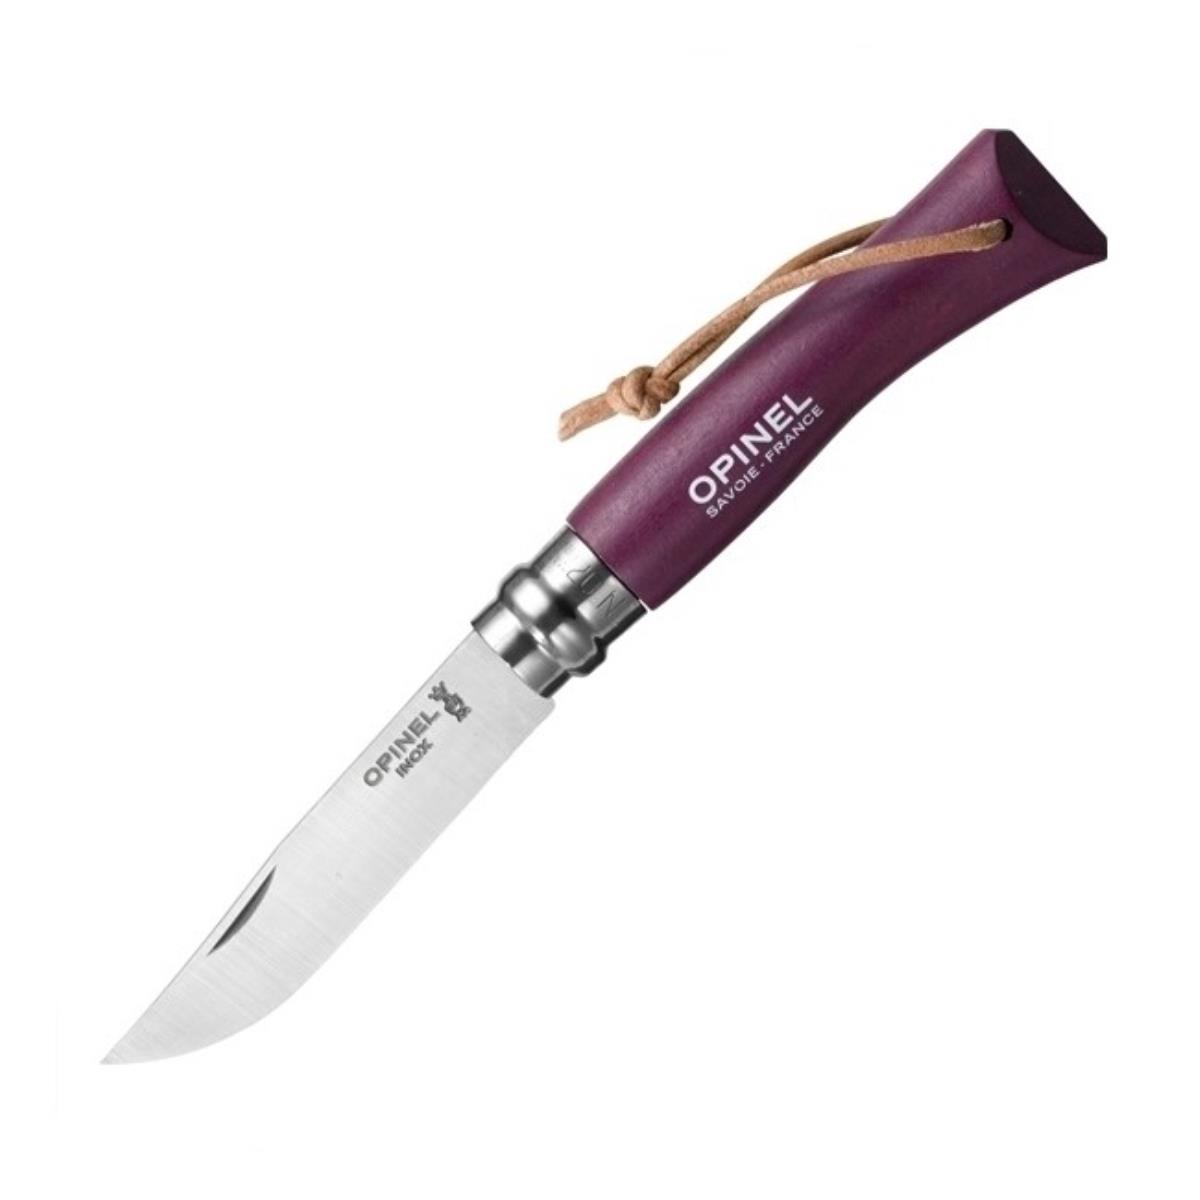 Нож №7 VRI Colored Tradition нерж. сталь, рукоять граб,  клинок 8см, темляк (слива) OPINEL доска разделочная для подачи с ручкой adelica 36×14 5×2 см тёмный граб